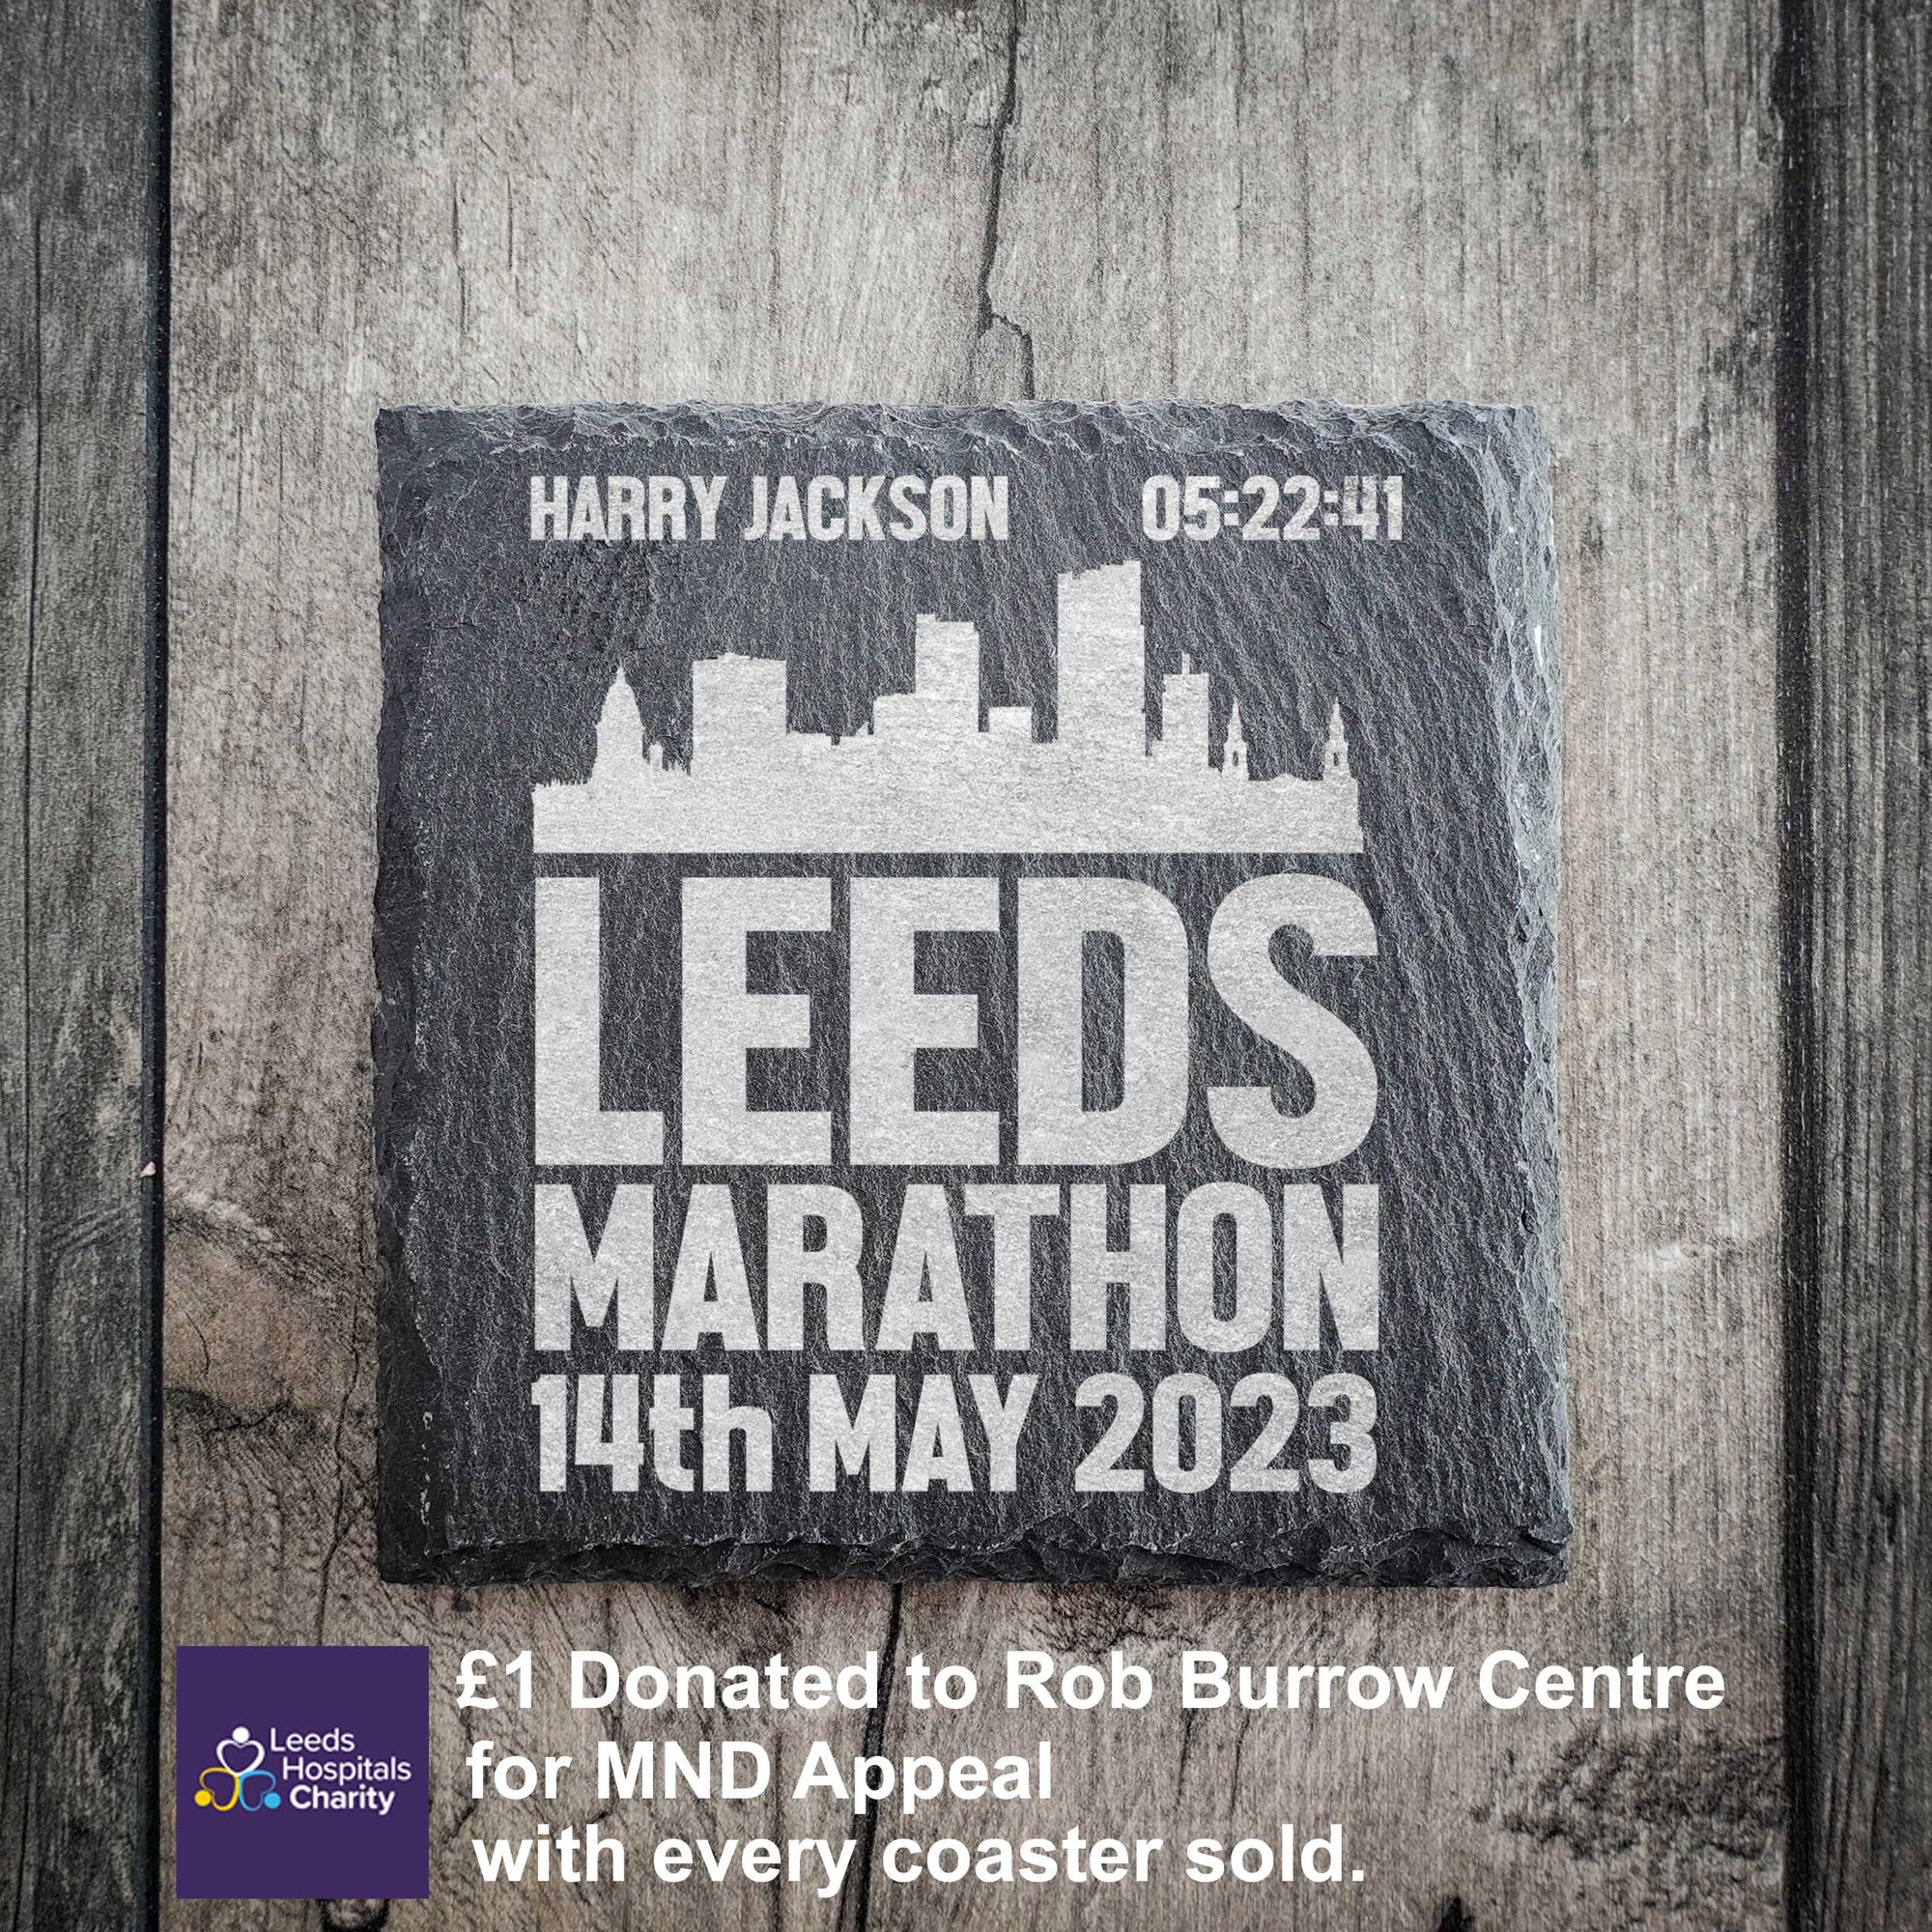 Personalised Leeds Marathon Skyline Slate Coaster